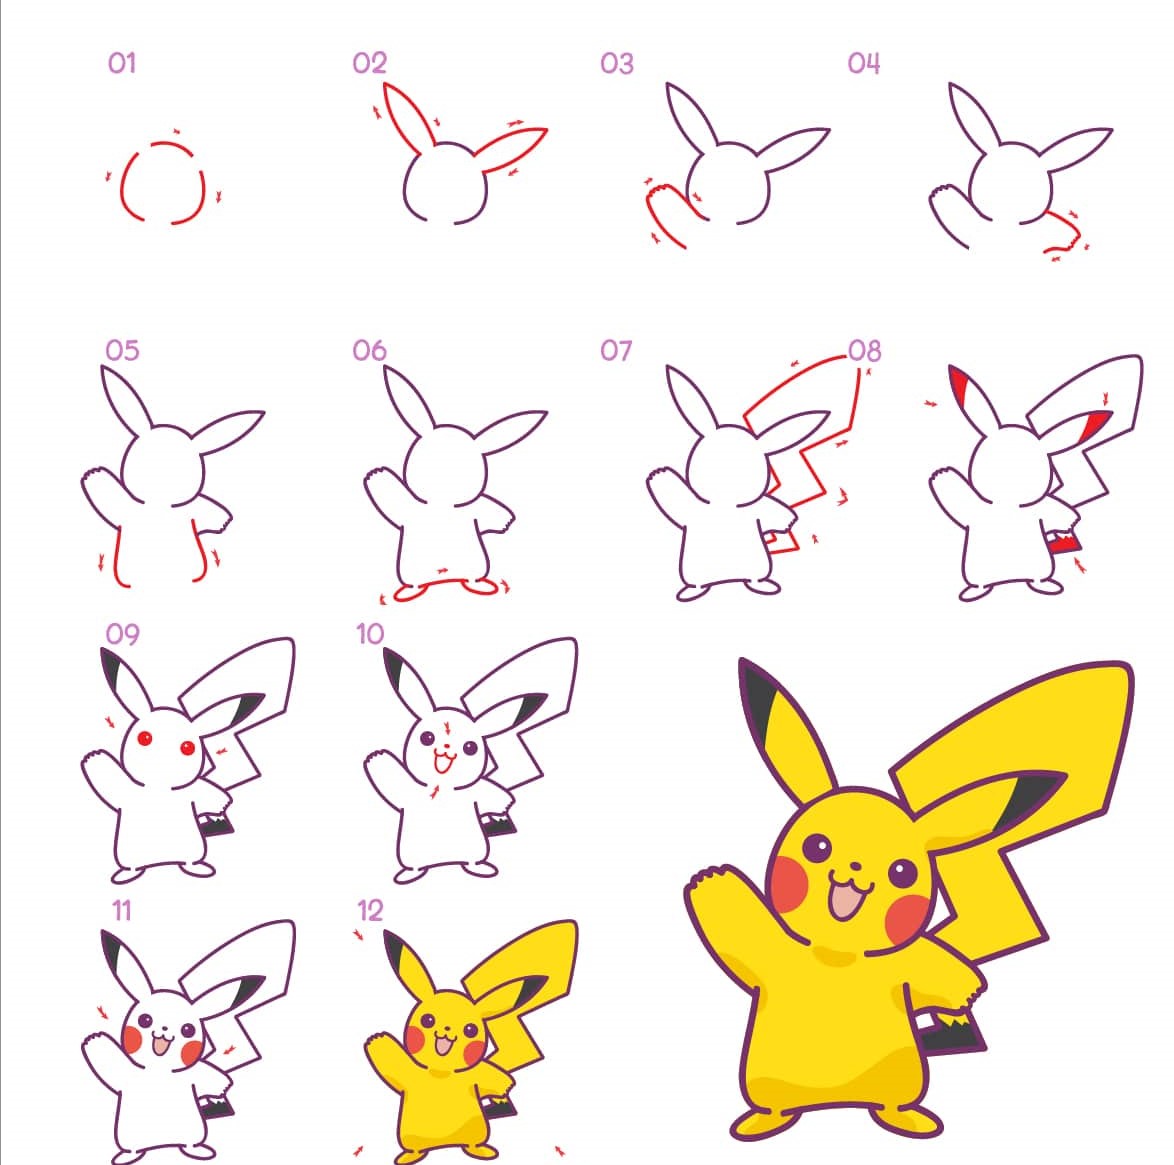 Pikachu vẽ theo từng bước: Hãy chiêm ngưỡng hình ảnh Pikachu dễ thương này và bắt tay vào vẽ theo từng bước cùng bé yêu của bạn. Học cách vẽ nhân vật yêu thích của mình một cách dễ dàng và thú vị với sự hướng dẫn chi tiết và bắt kịp xu hướng hiện nay.